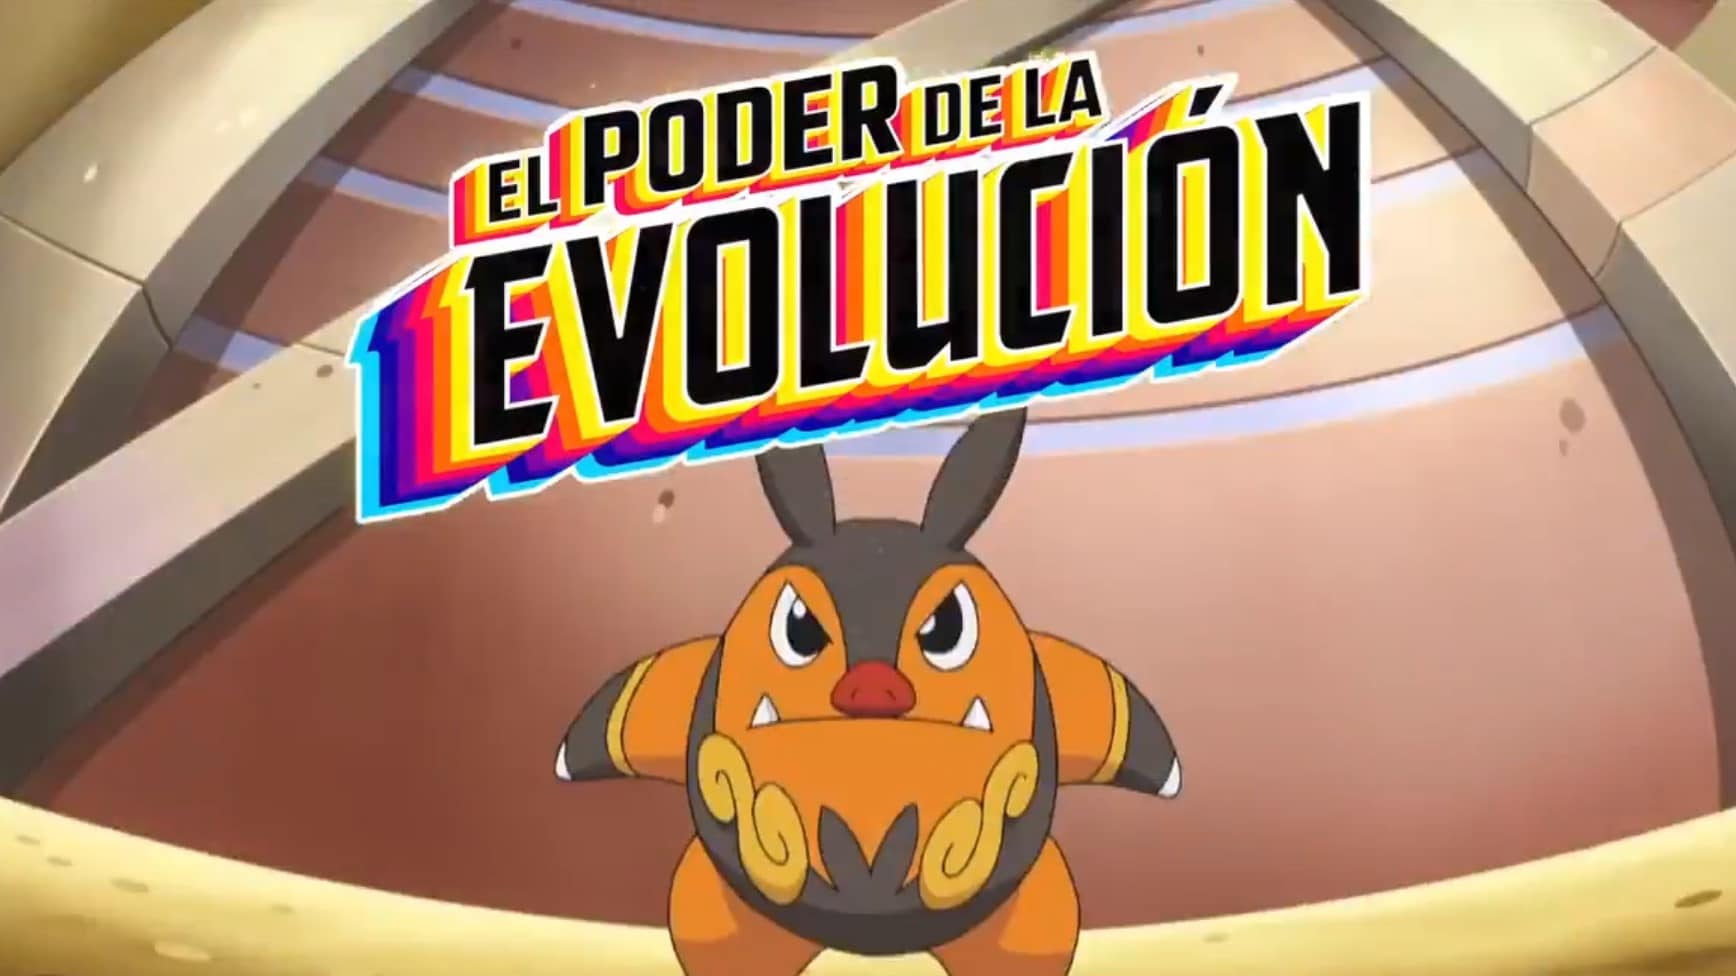 Anunciados nuevos episodios de la serie Viajes Pokémon centrados en la evolución que se estrenarán mañana